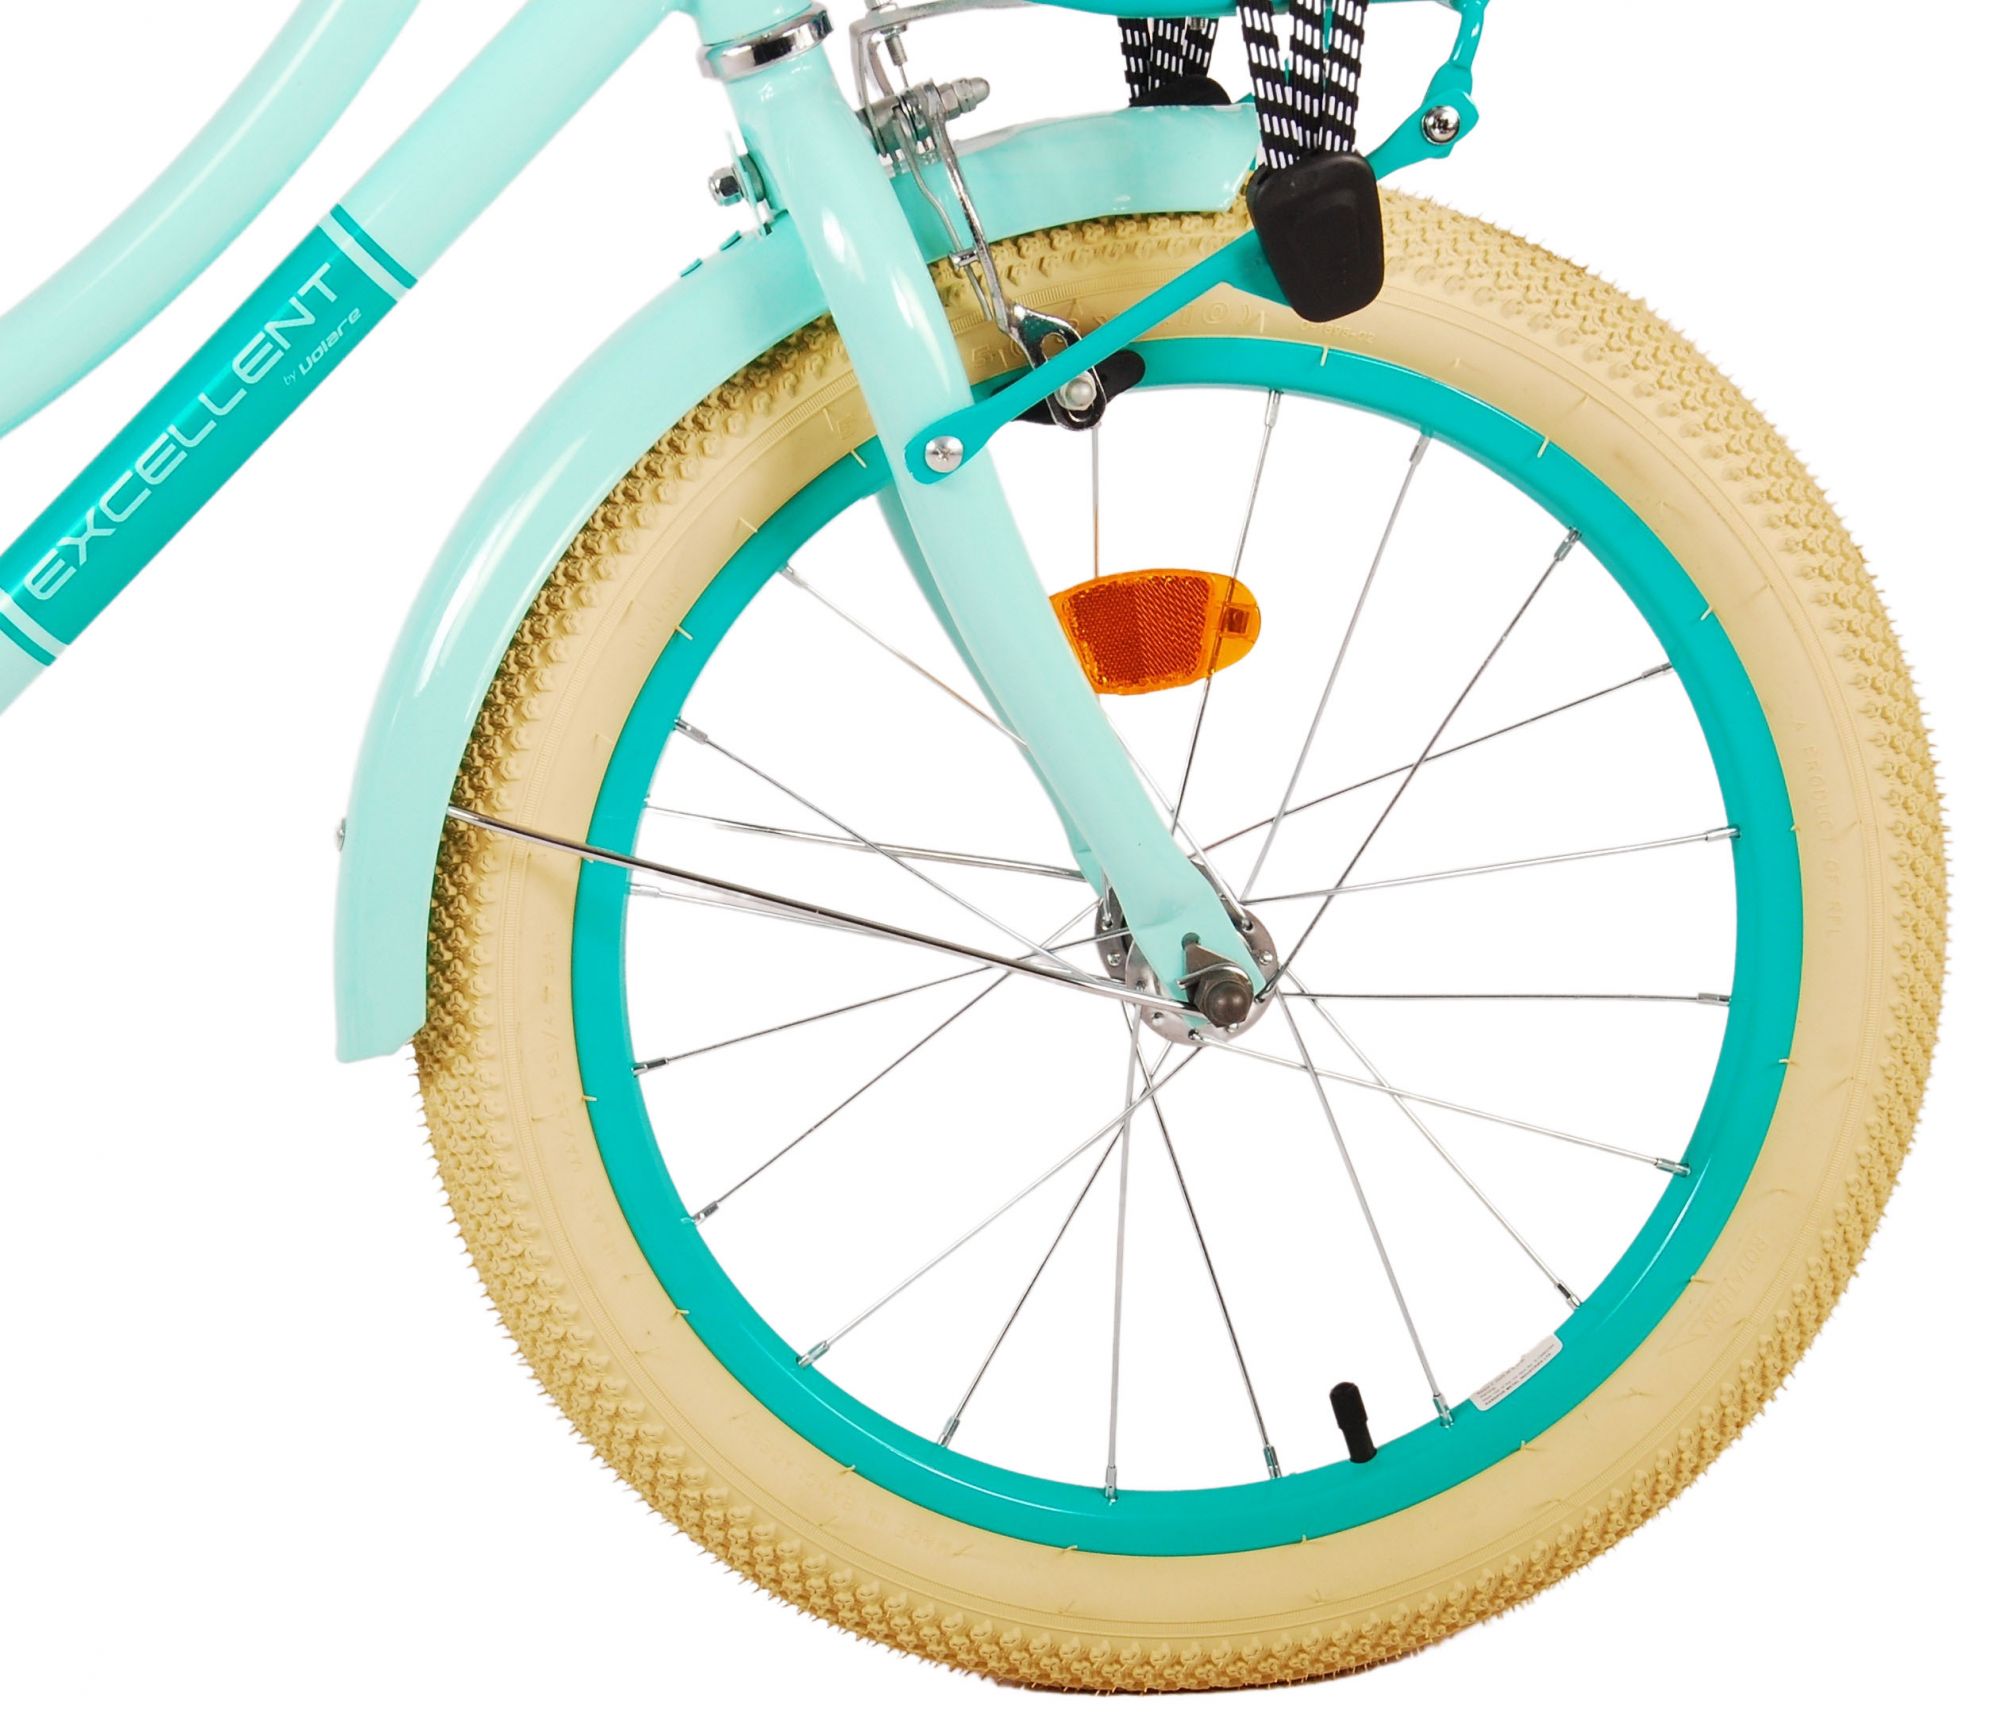 Kinderfahrrad Excellent Fahrrad für Mädchen 18 Zoll Kinderrad in Grün